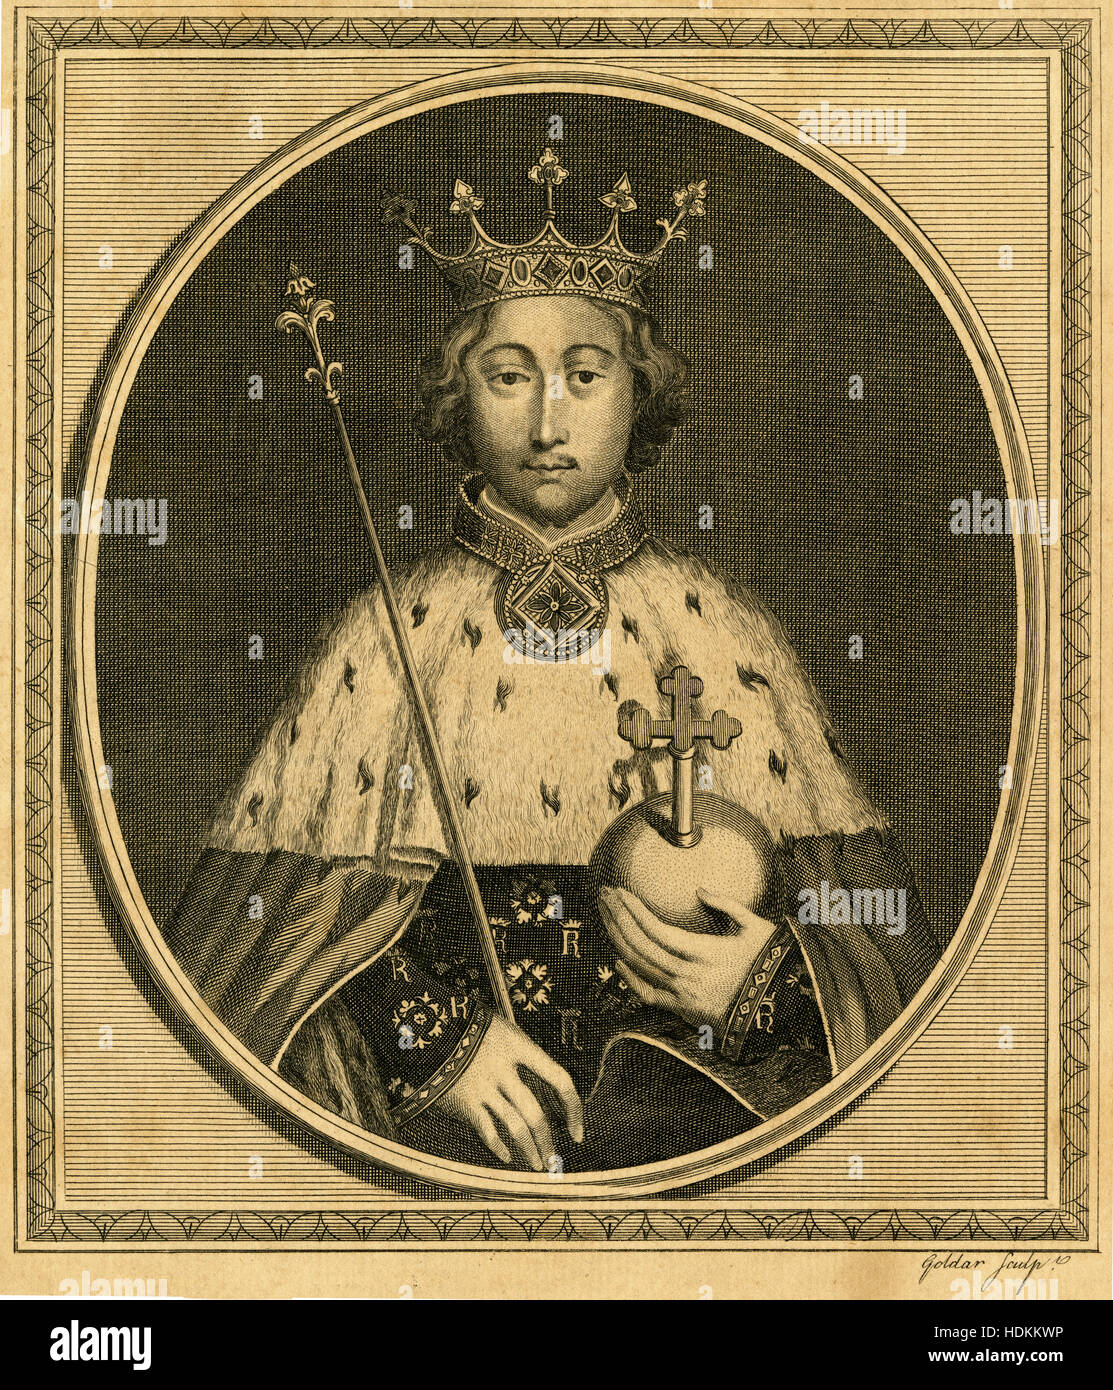 Gravure ancienne 1785, le roi Richard II. Richard II (1367-1400), également connu sous le nom de Richard de Bordeaux, fut roi de France de 1377 jusqu'à ce qu'il a été déposé le 30 septembre 1399. SOURCE : gravure originale. Banque D'Images